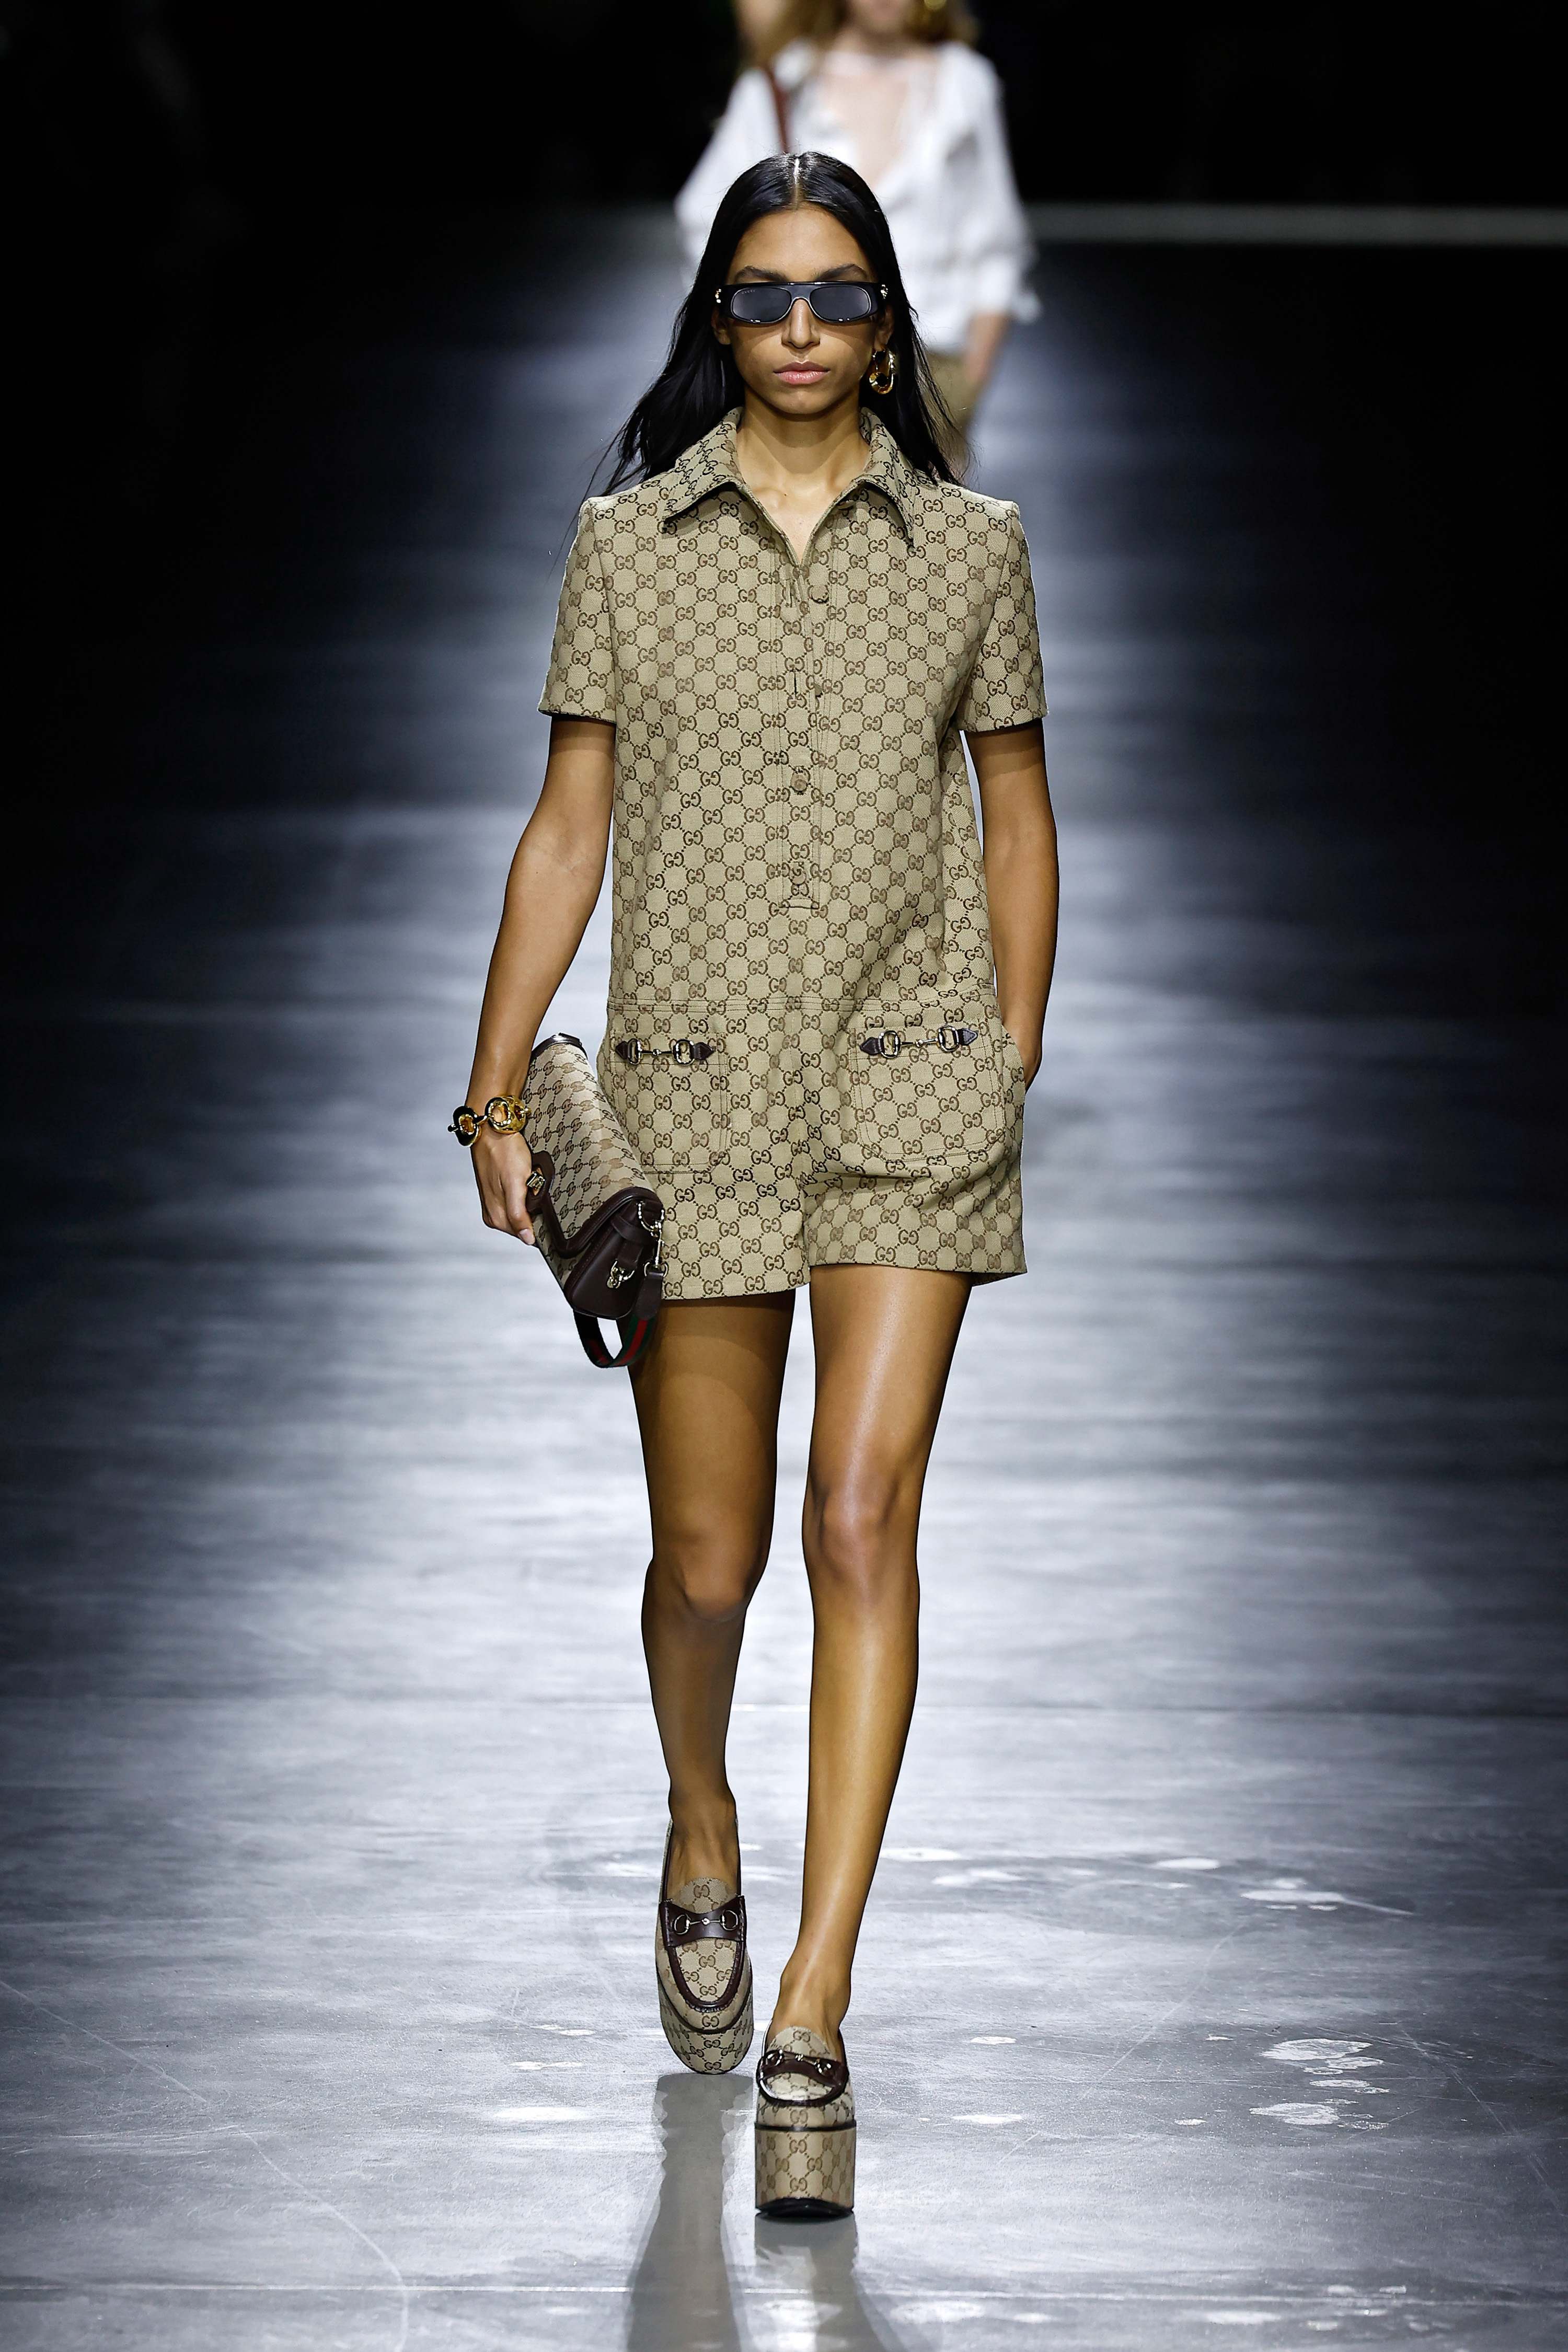 Investors are too Fashion-Forward at Gucci – TextileFuture